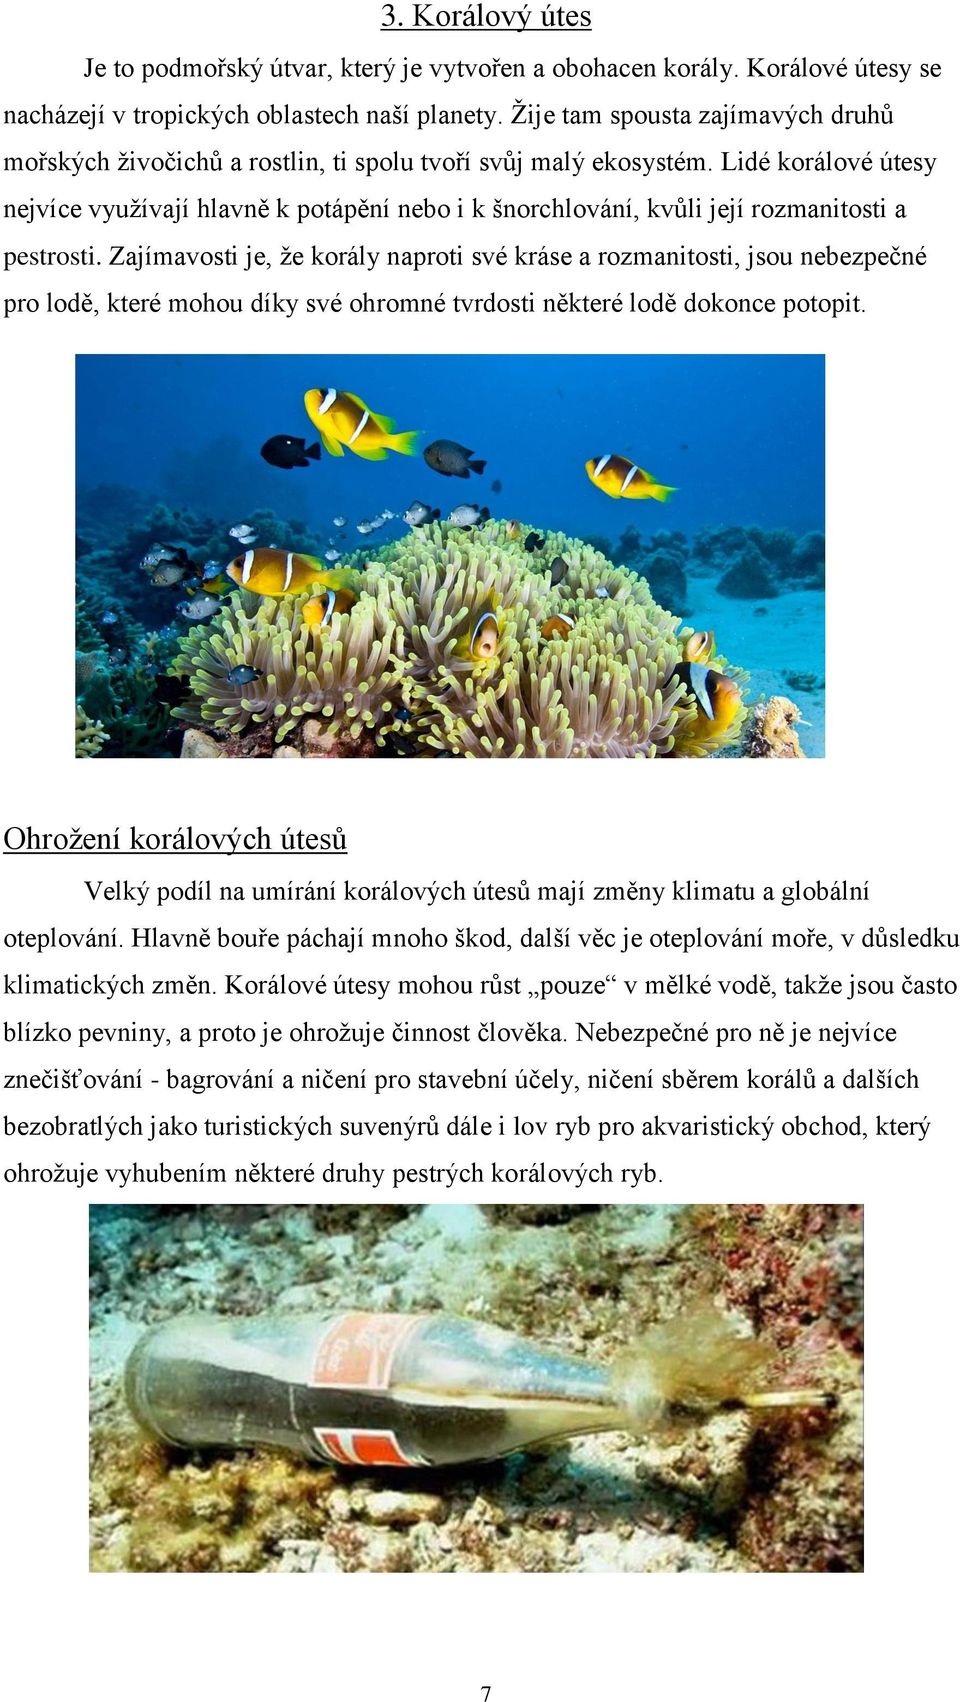 Lidé korálové útesy nejvíce využívají hlavně k potápění nebo i k šnorchlování, kvůli její rozmanitosti a pestrosti.